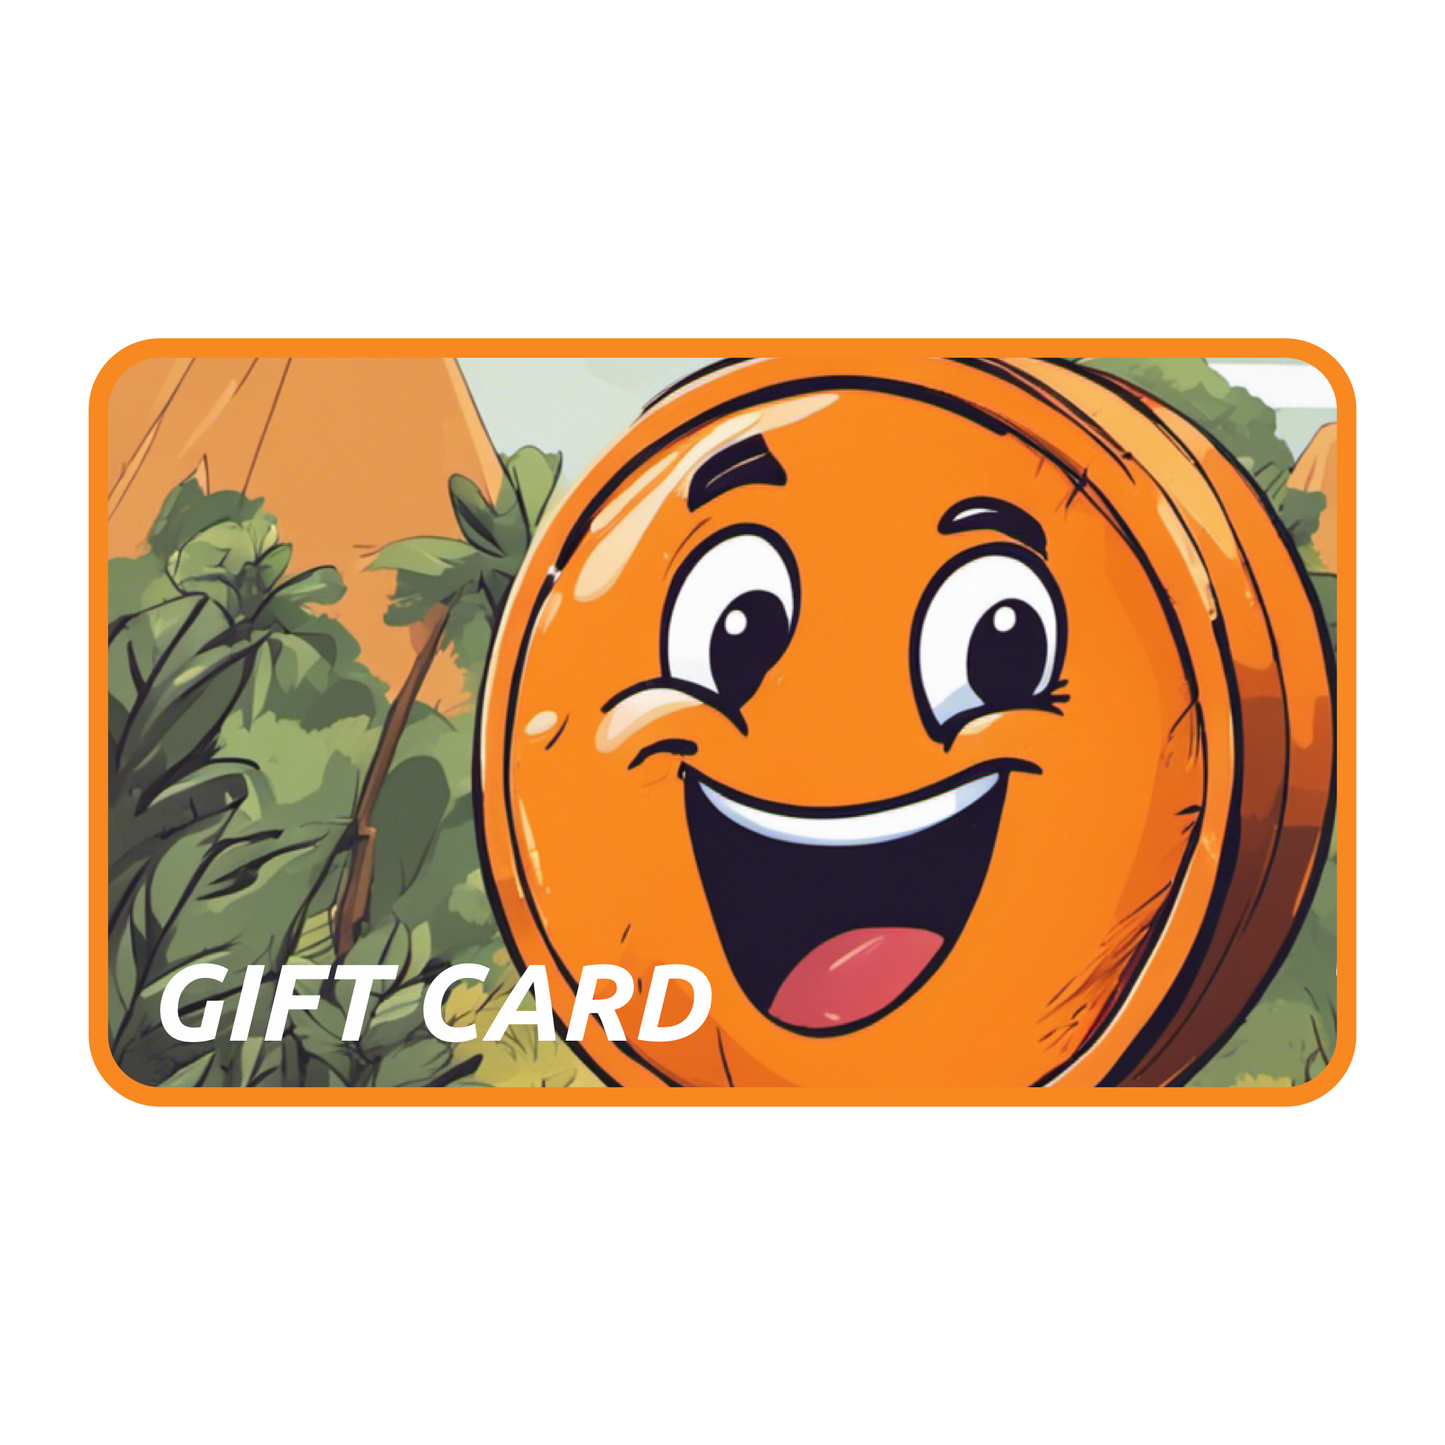 Shop Bitcoin Australia - Gift Card